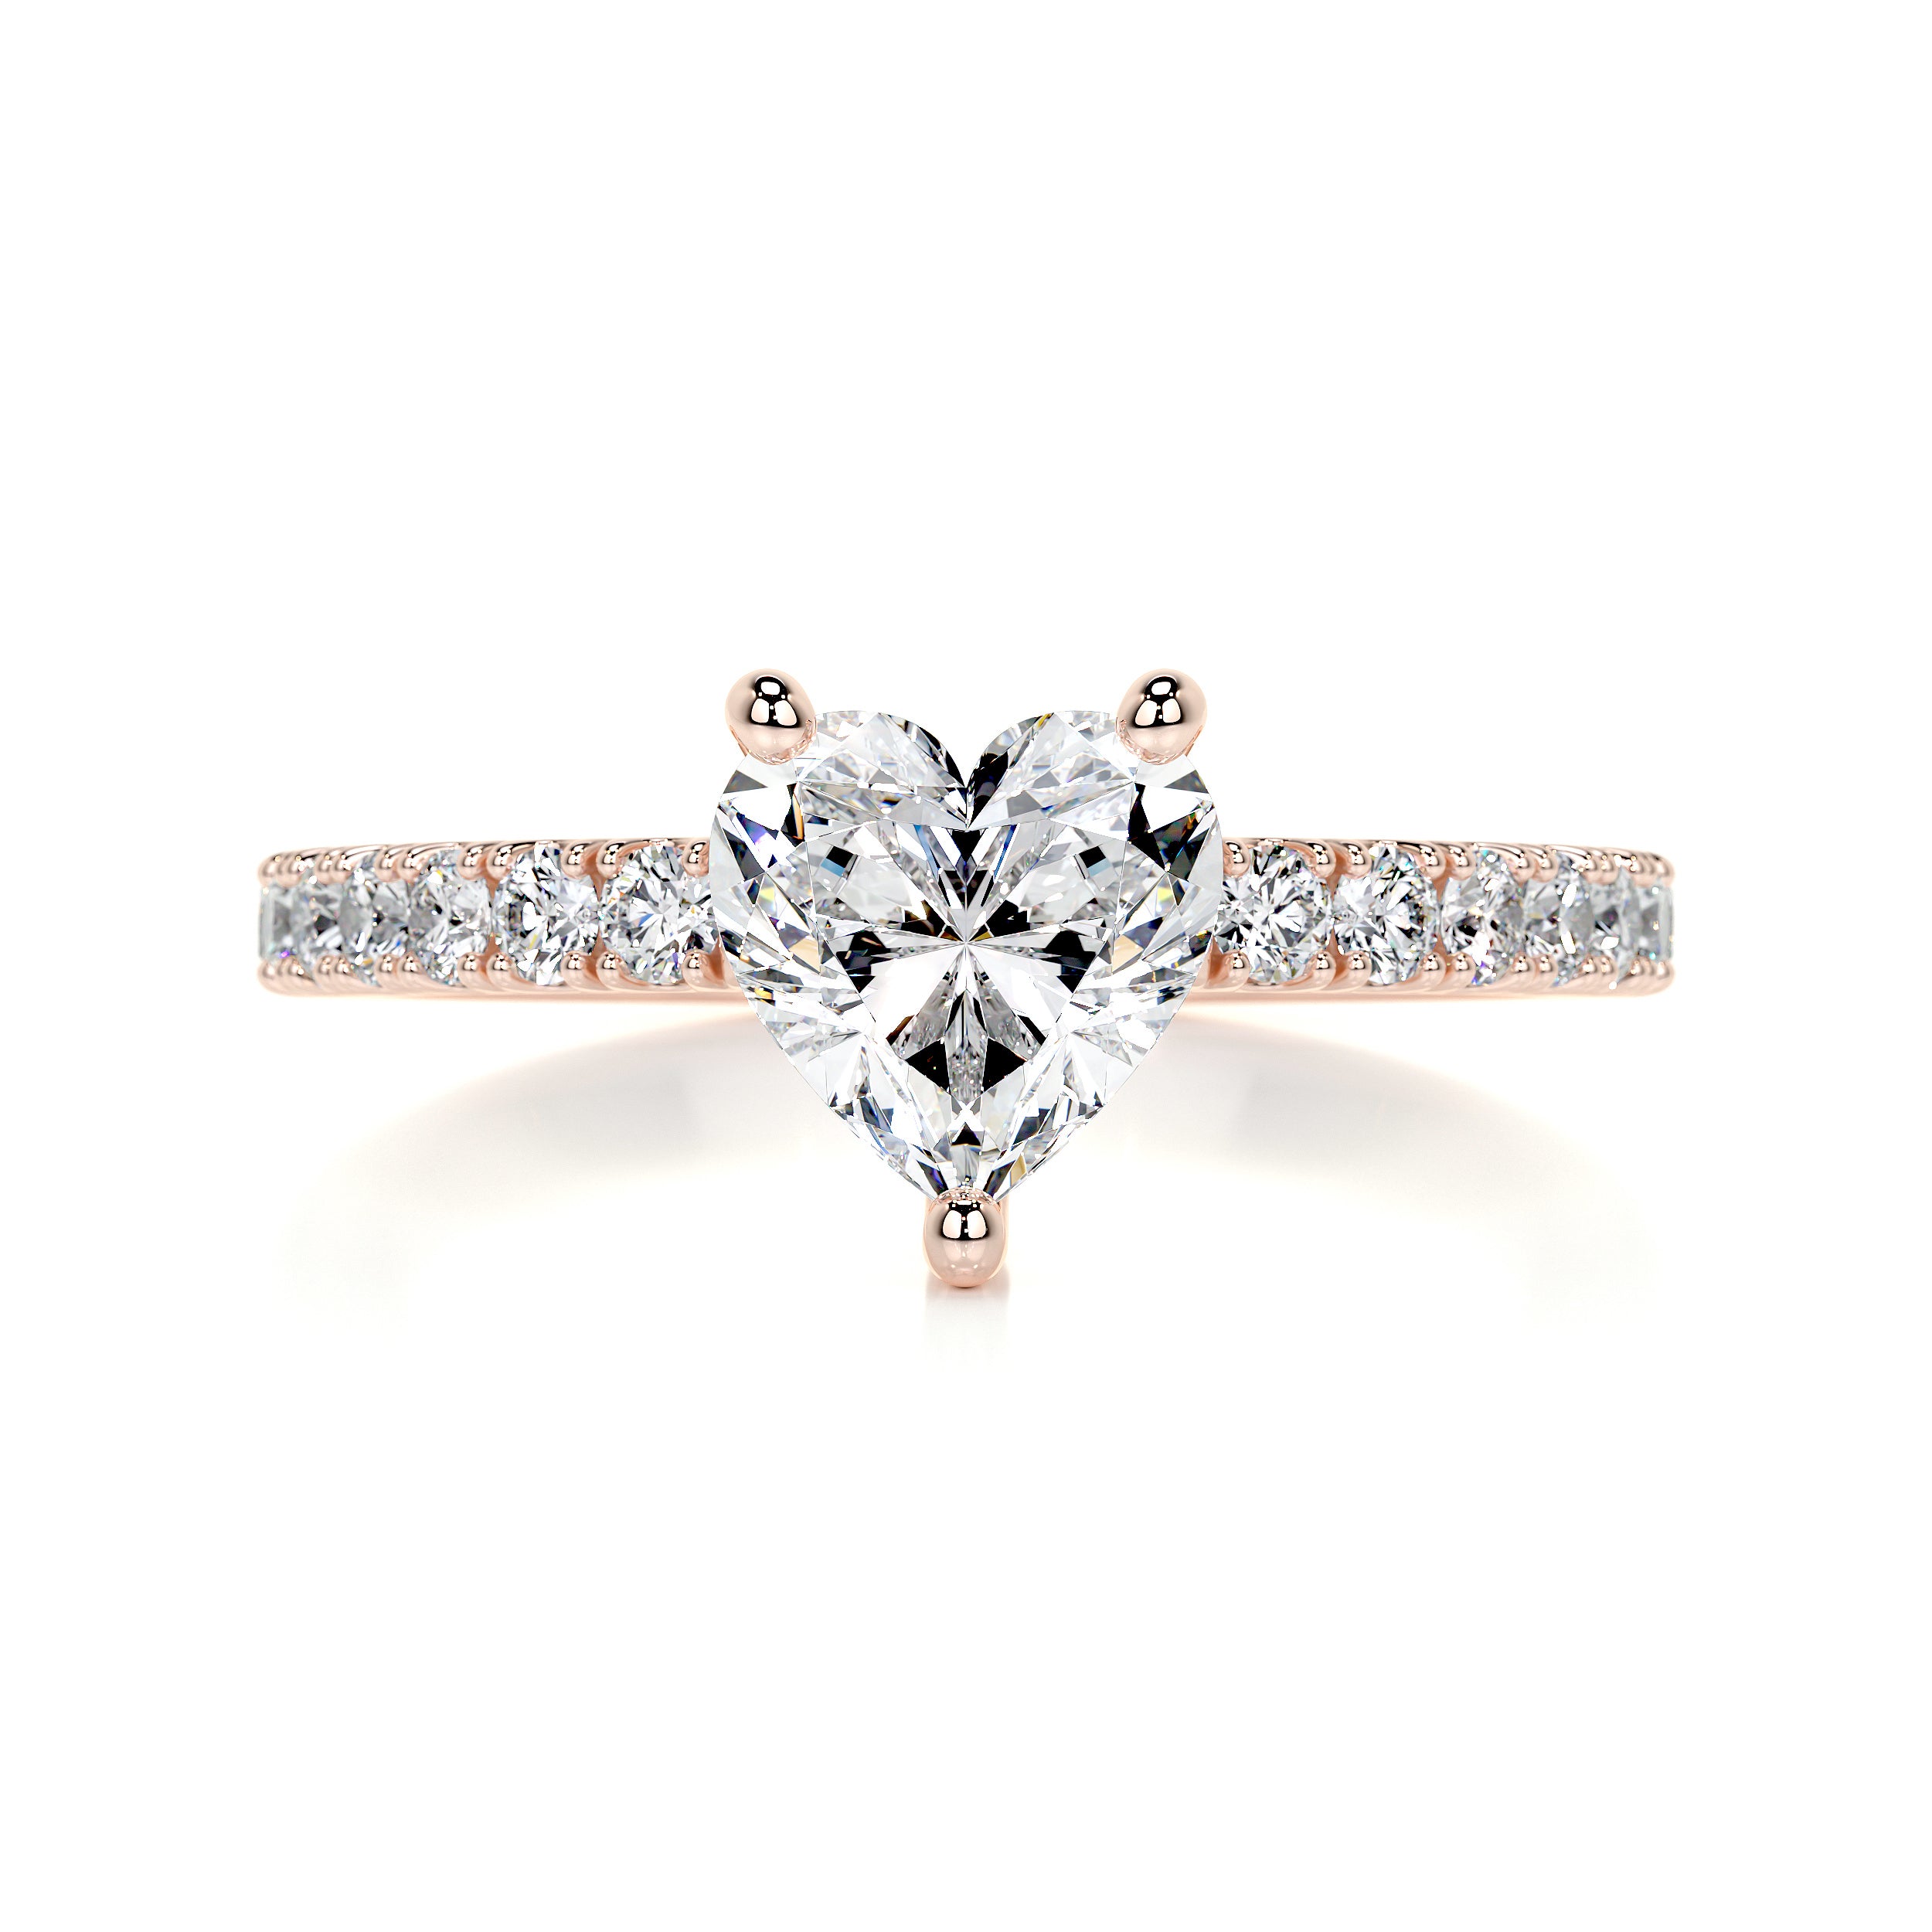 Audrey Diamond Engagement Ring   (1.3 Carat) -14K Rose Gold